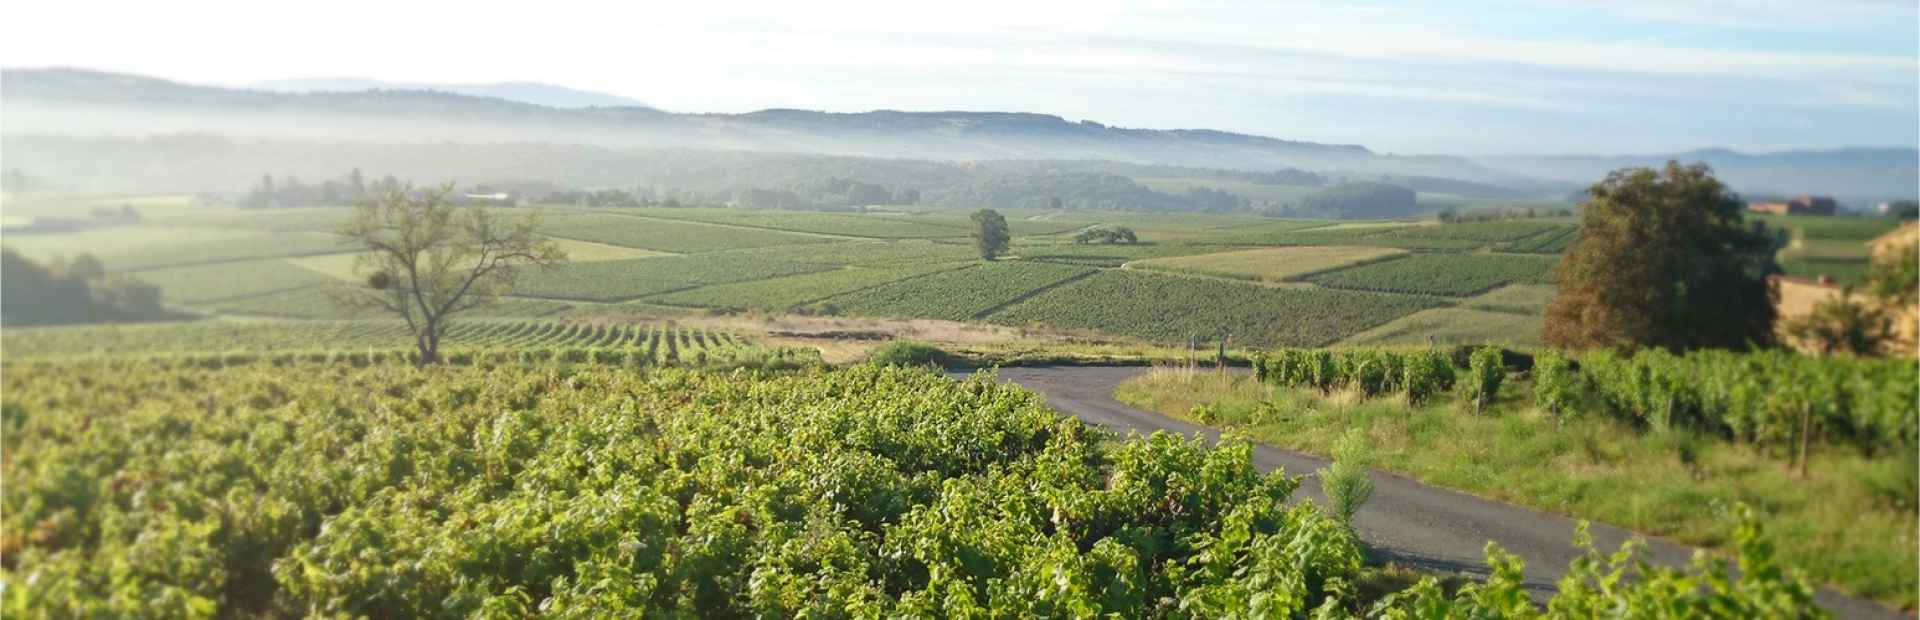 Winesof the appellation Coteaux-du-lyonnais